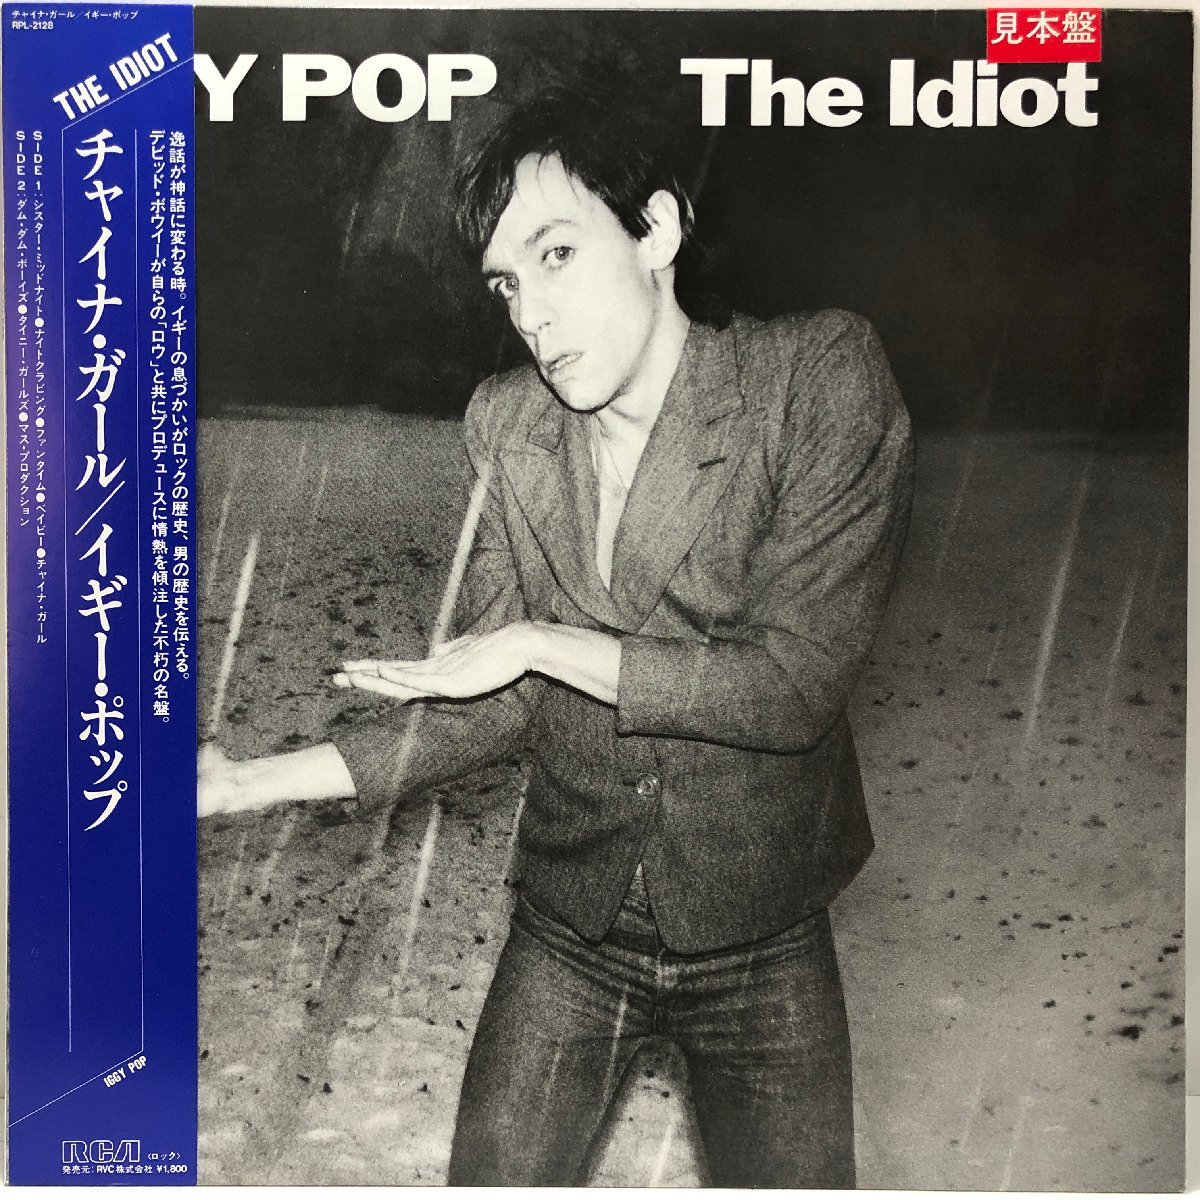 【LP】イギー・ポップ / チャイナ・ガール THE IDIOT / IGGY POP 解説・歌詞付 RCA RPL-2128